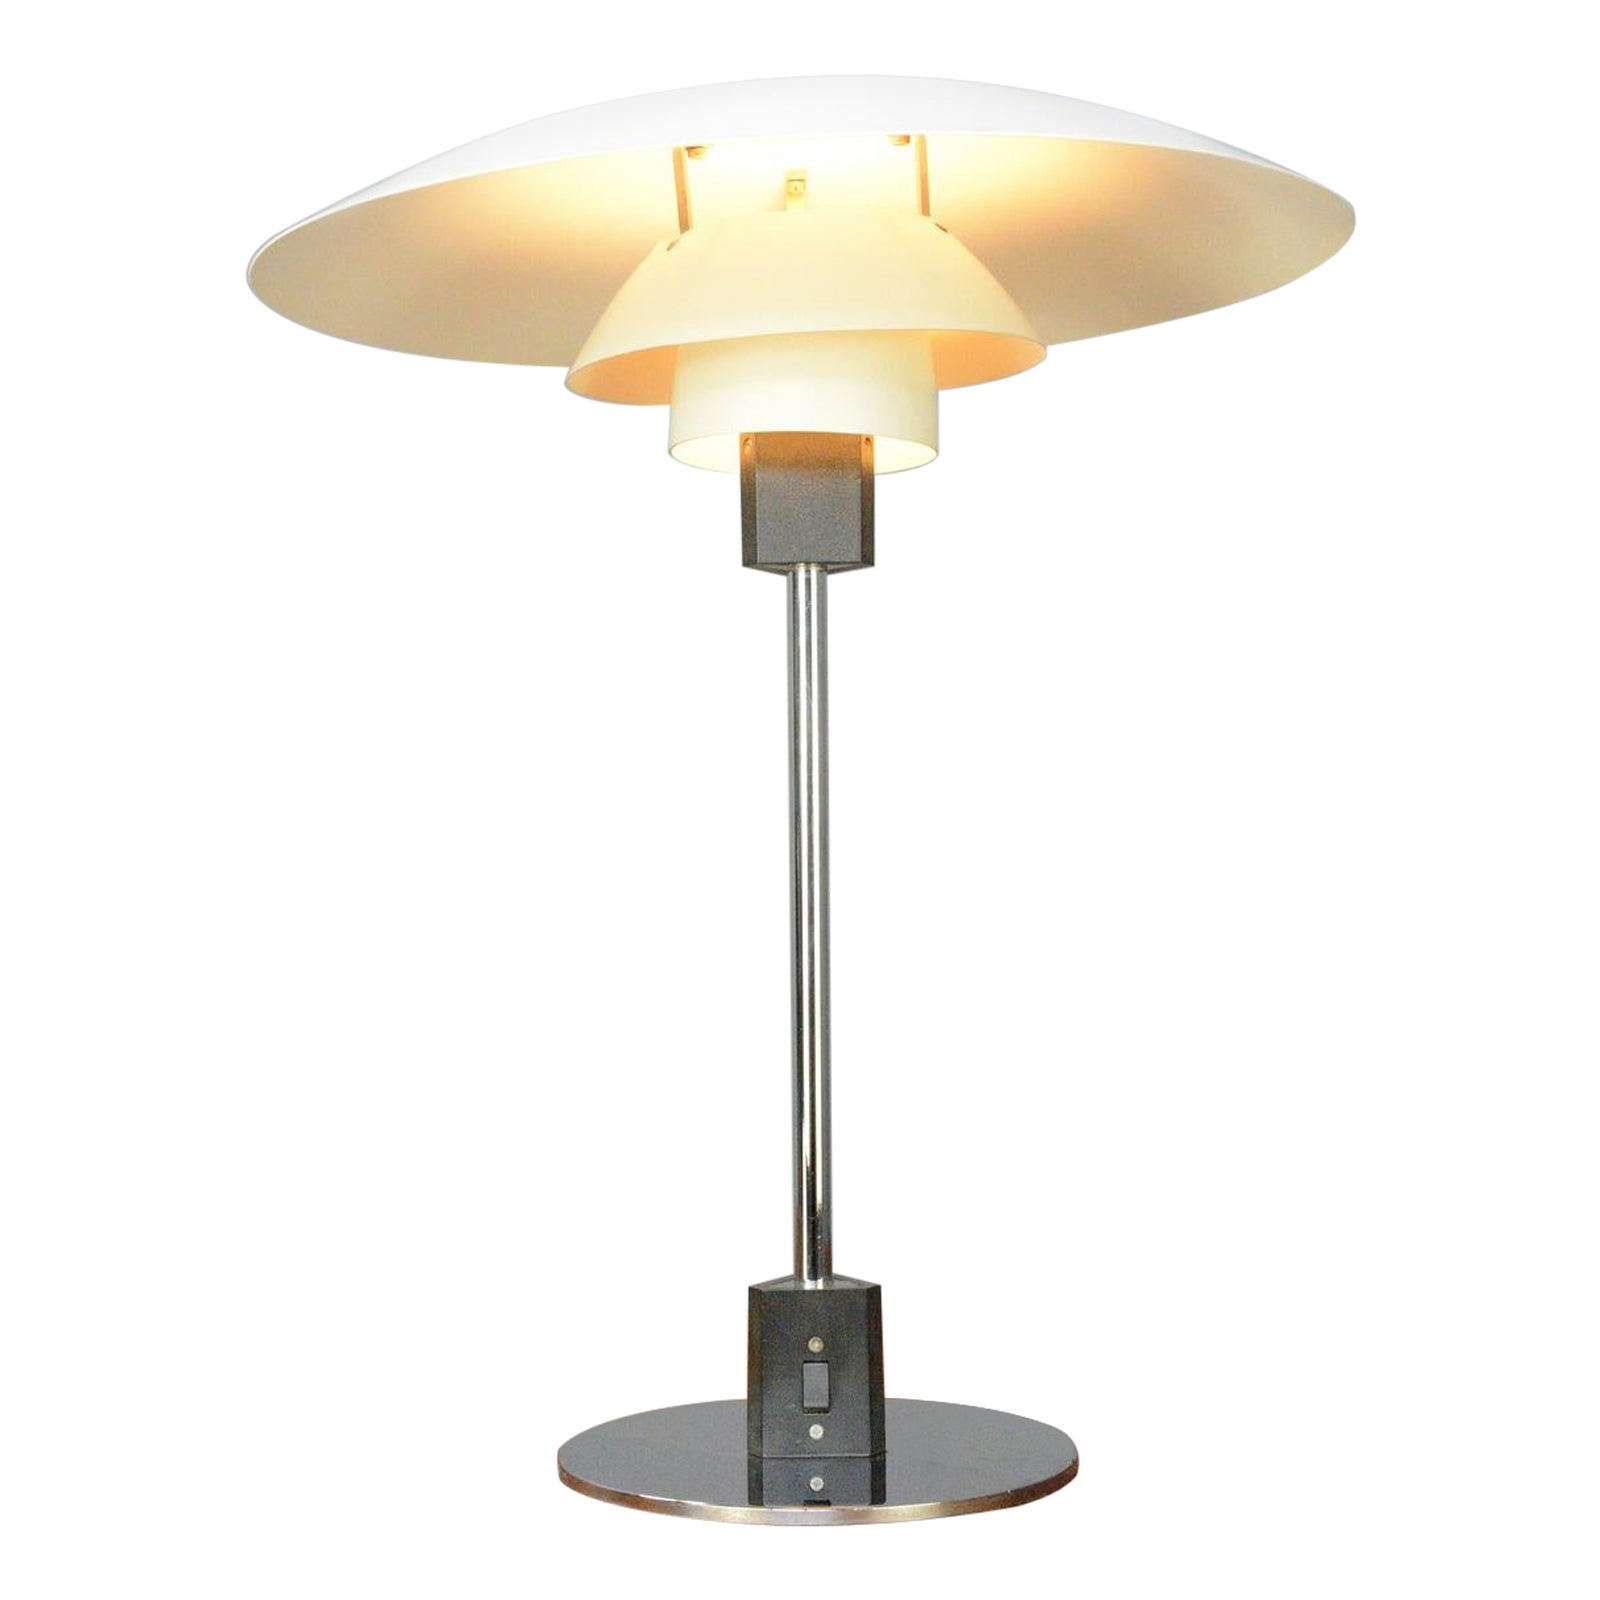 Model 4/3 Table Lamp by Louis Poulsen, Circa 1960s